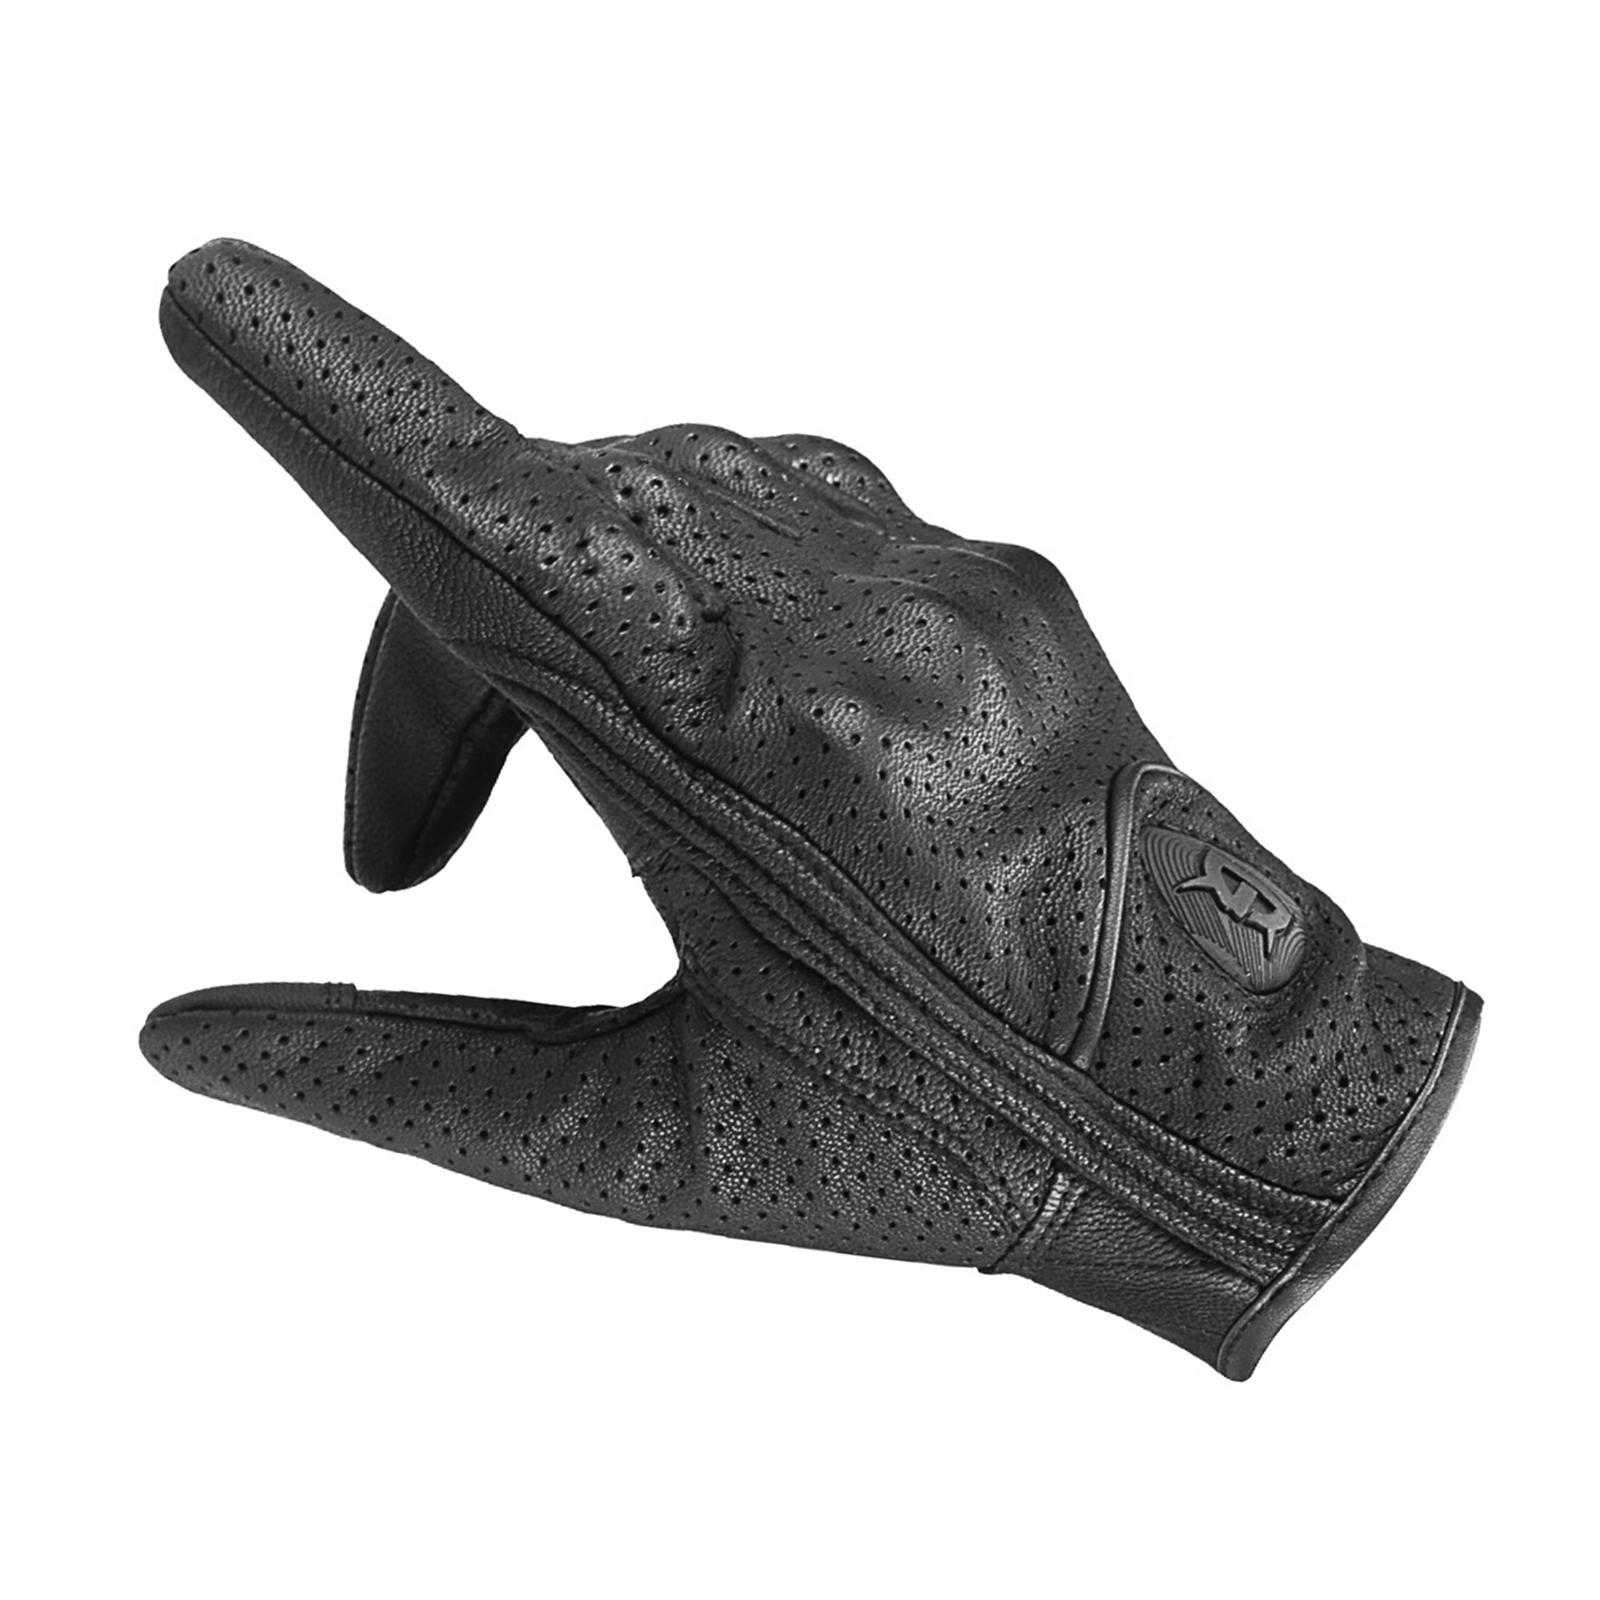 Leather Motorbike Gloves Summer Full Finger Touchscreen for Men Women